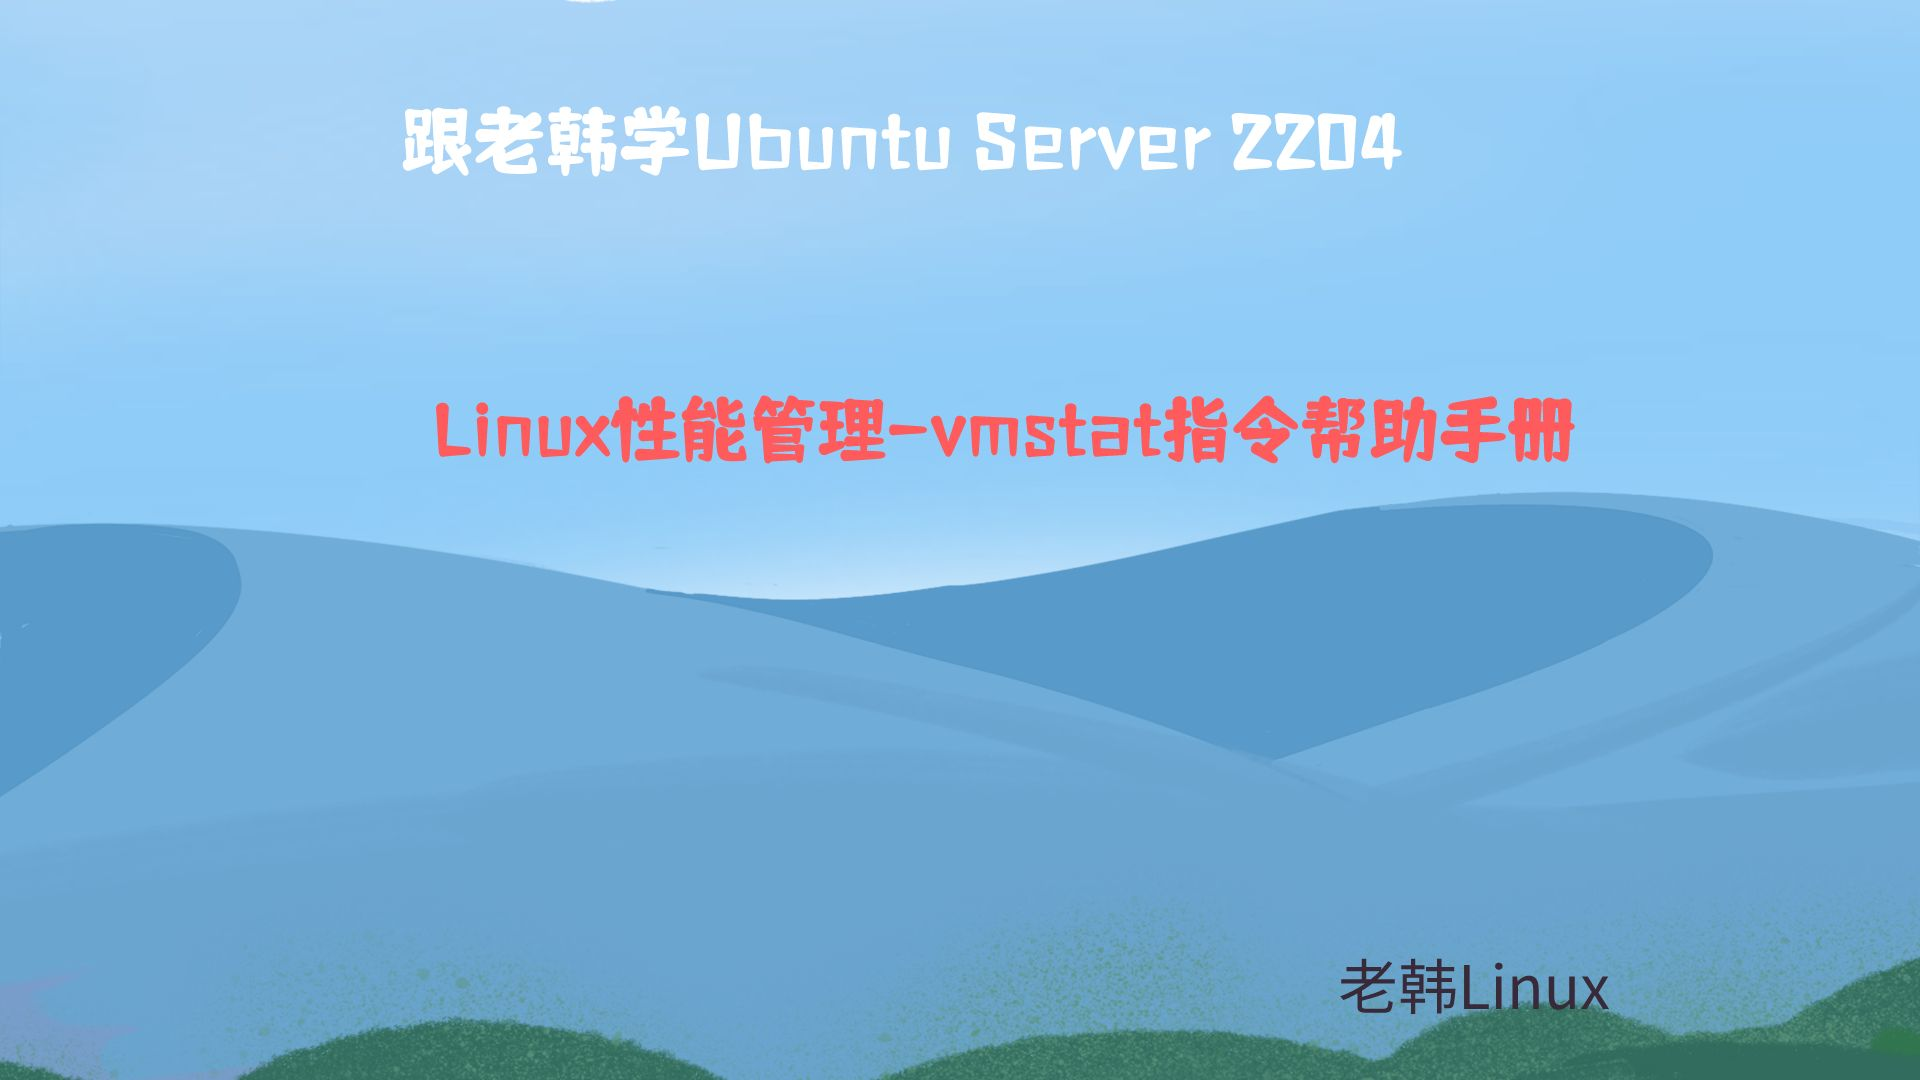 跟老韩学Ubuntu Server 2204-Linux性能管理-vmstat指令帮助手册